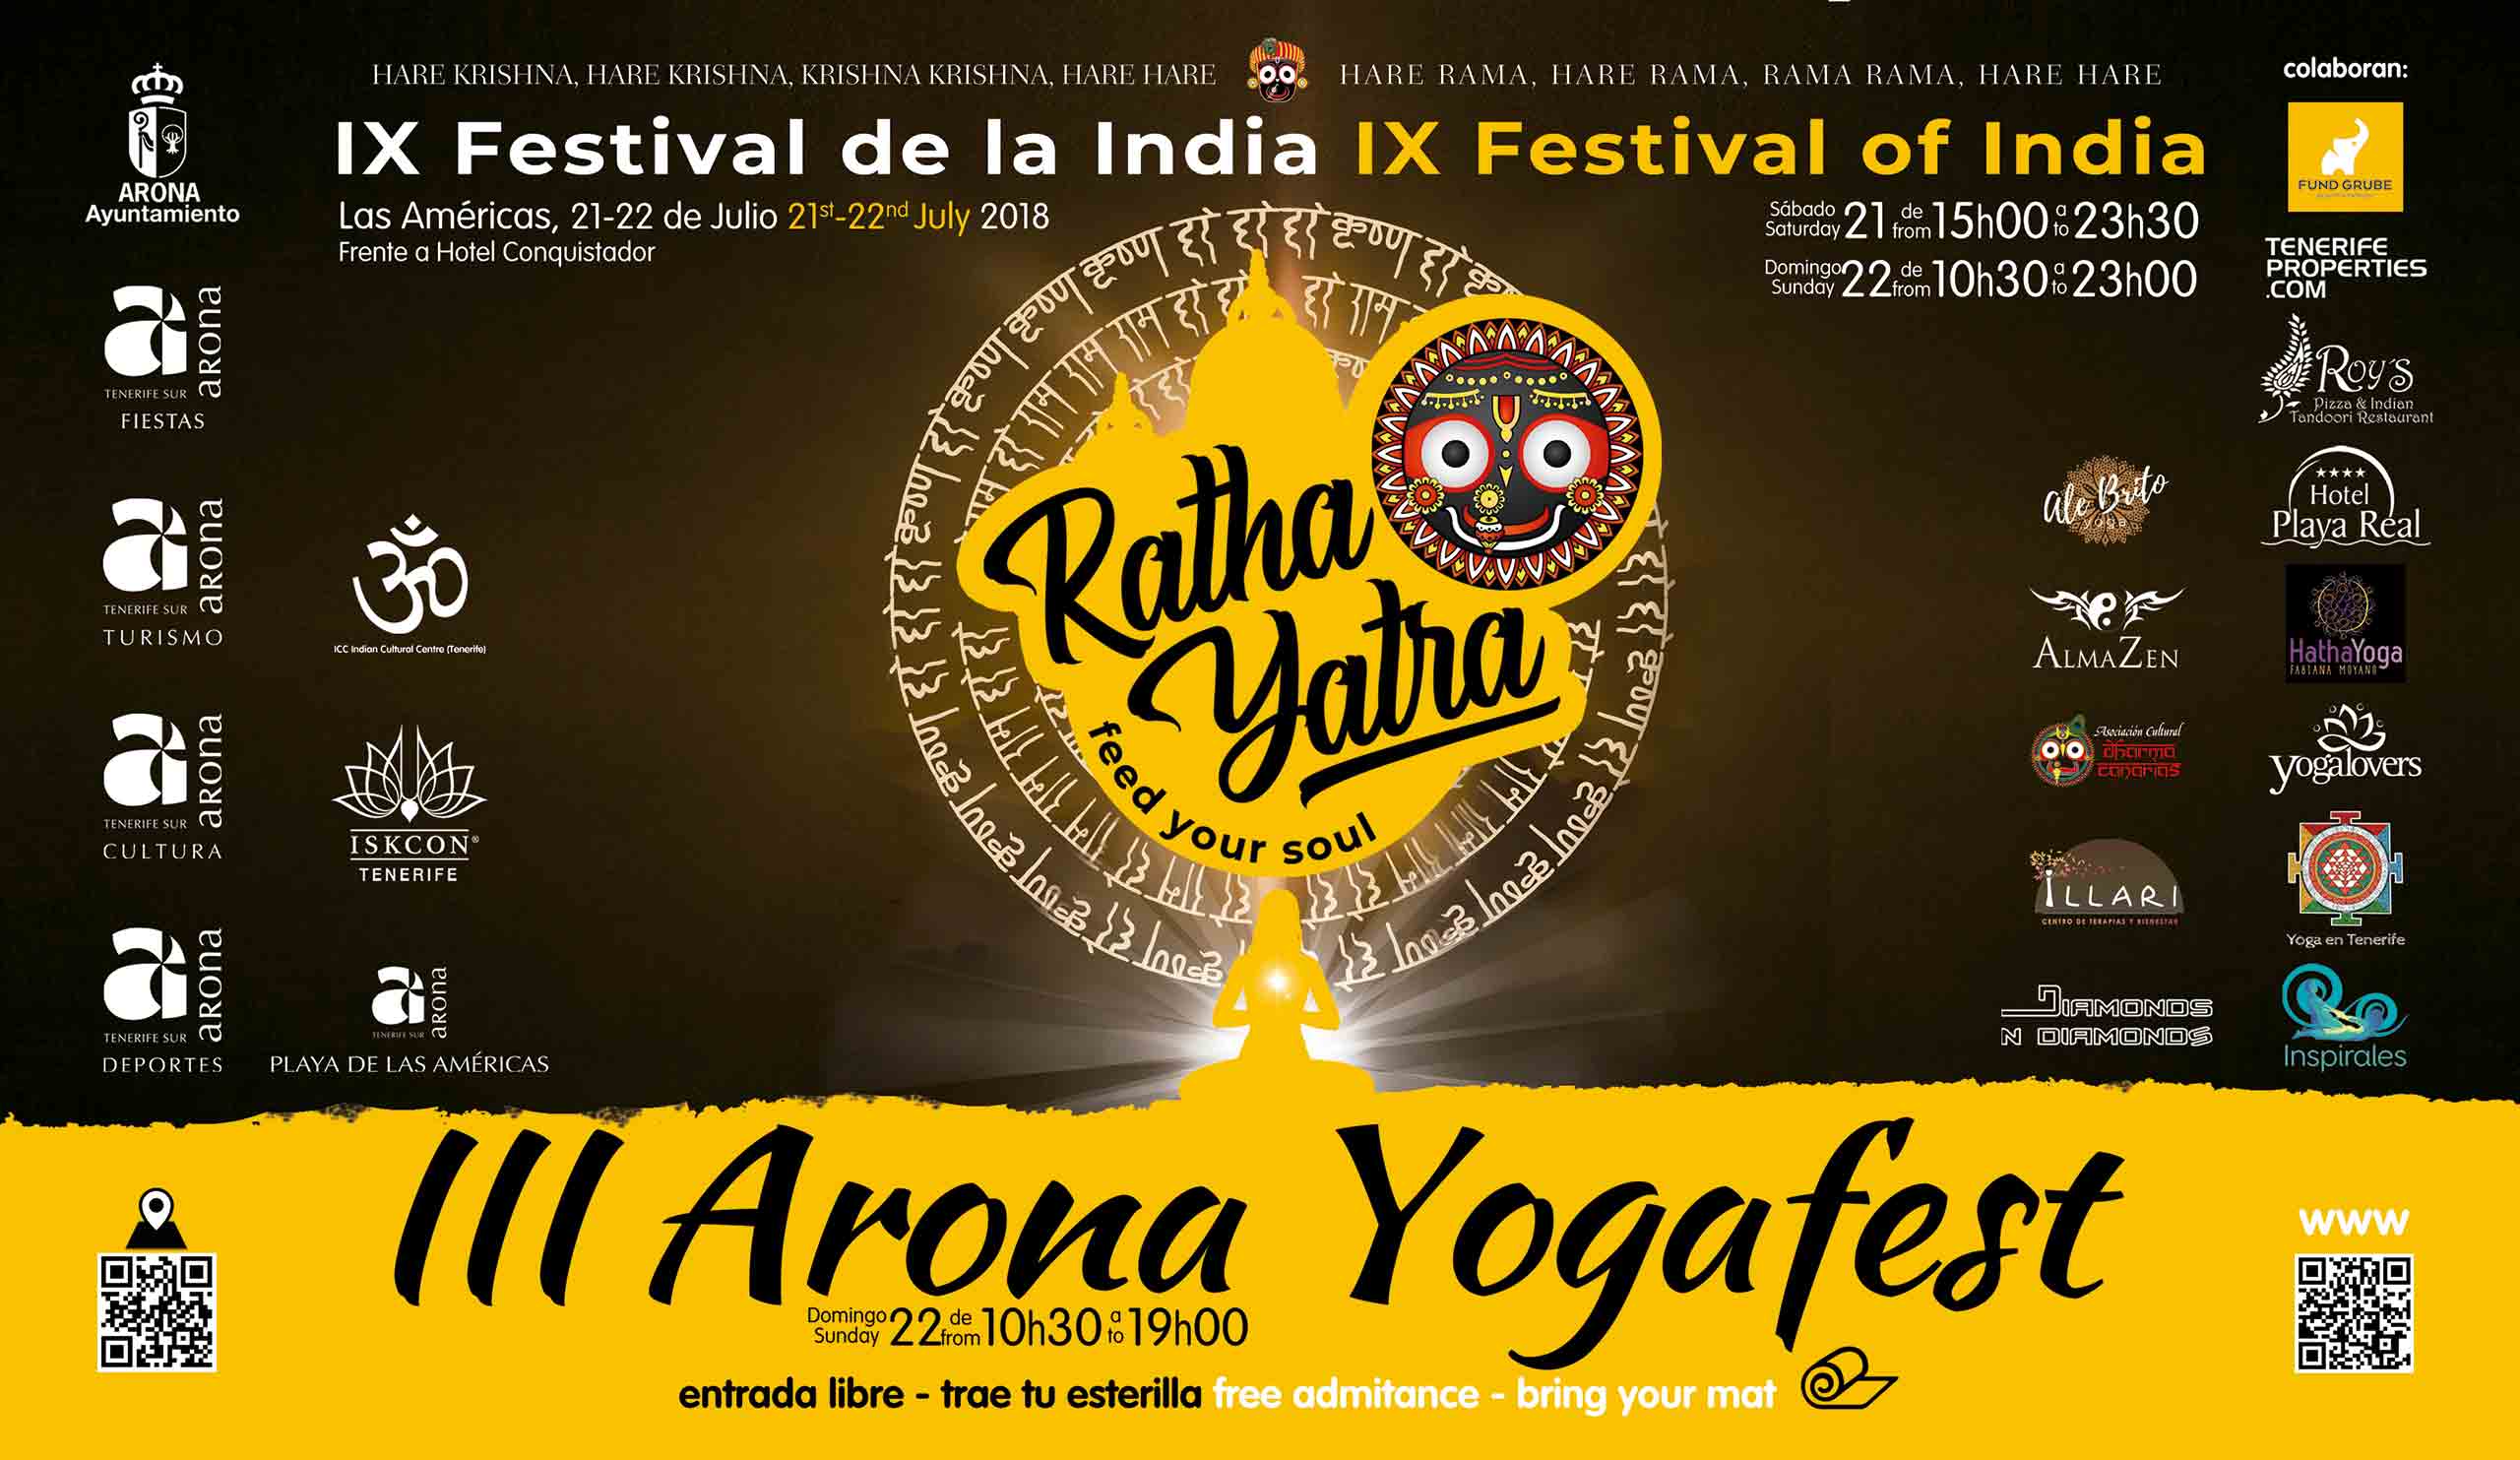 Program of Ratha Yatra Festival in Playa de Las Américas on July 21 & 22, 2018